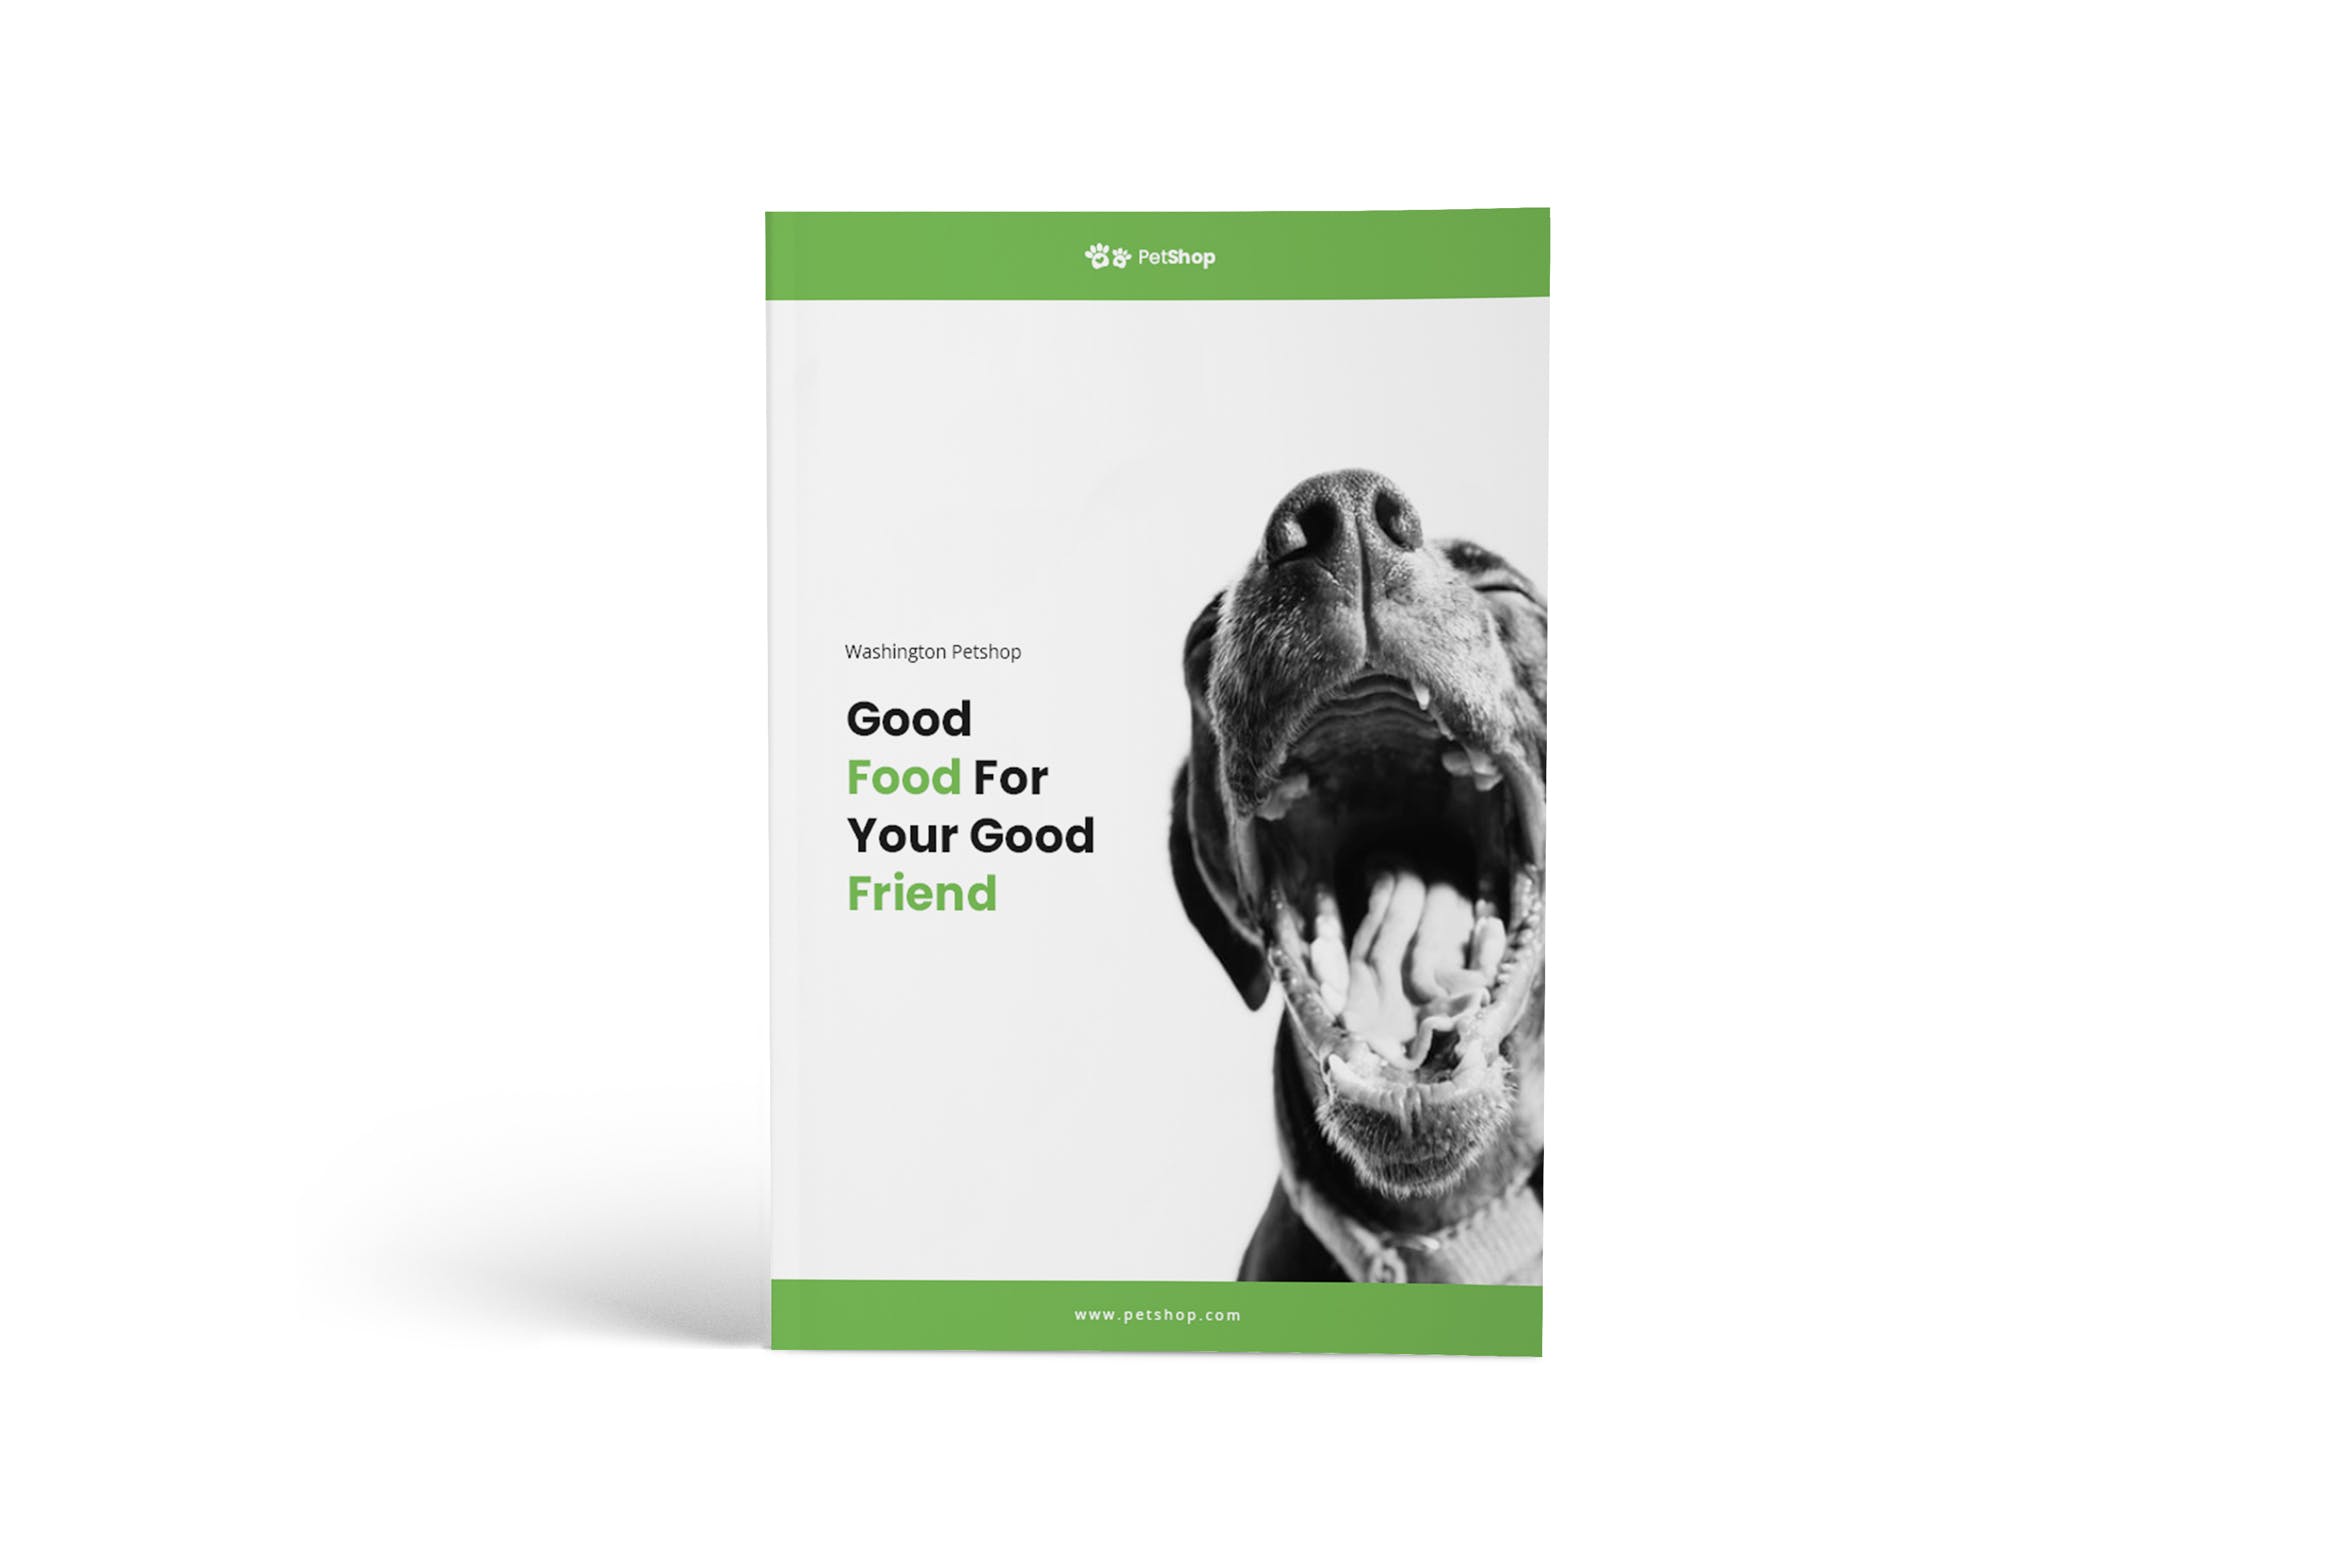 A4纸尺寸宠物医院/宠物店简介画册设计模板 Pet Shop A4 Brochure Template插图